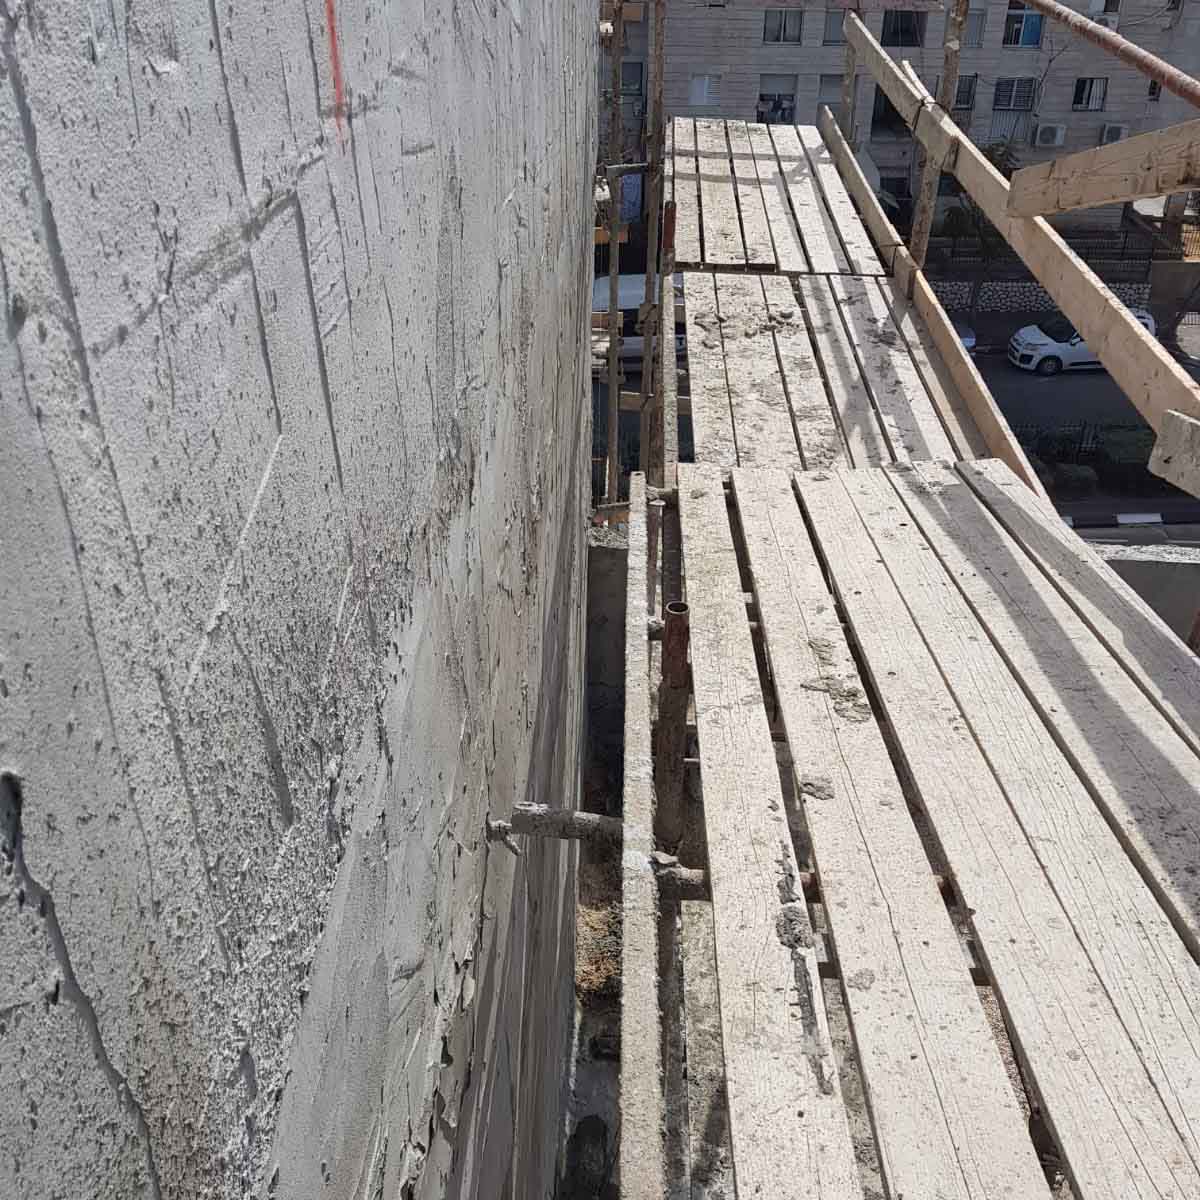 פיגום לקוי באתר בניה באשדוד. צילום: מינהל הבטיחות במשרד העבודה